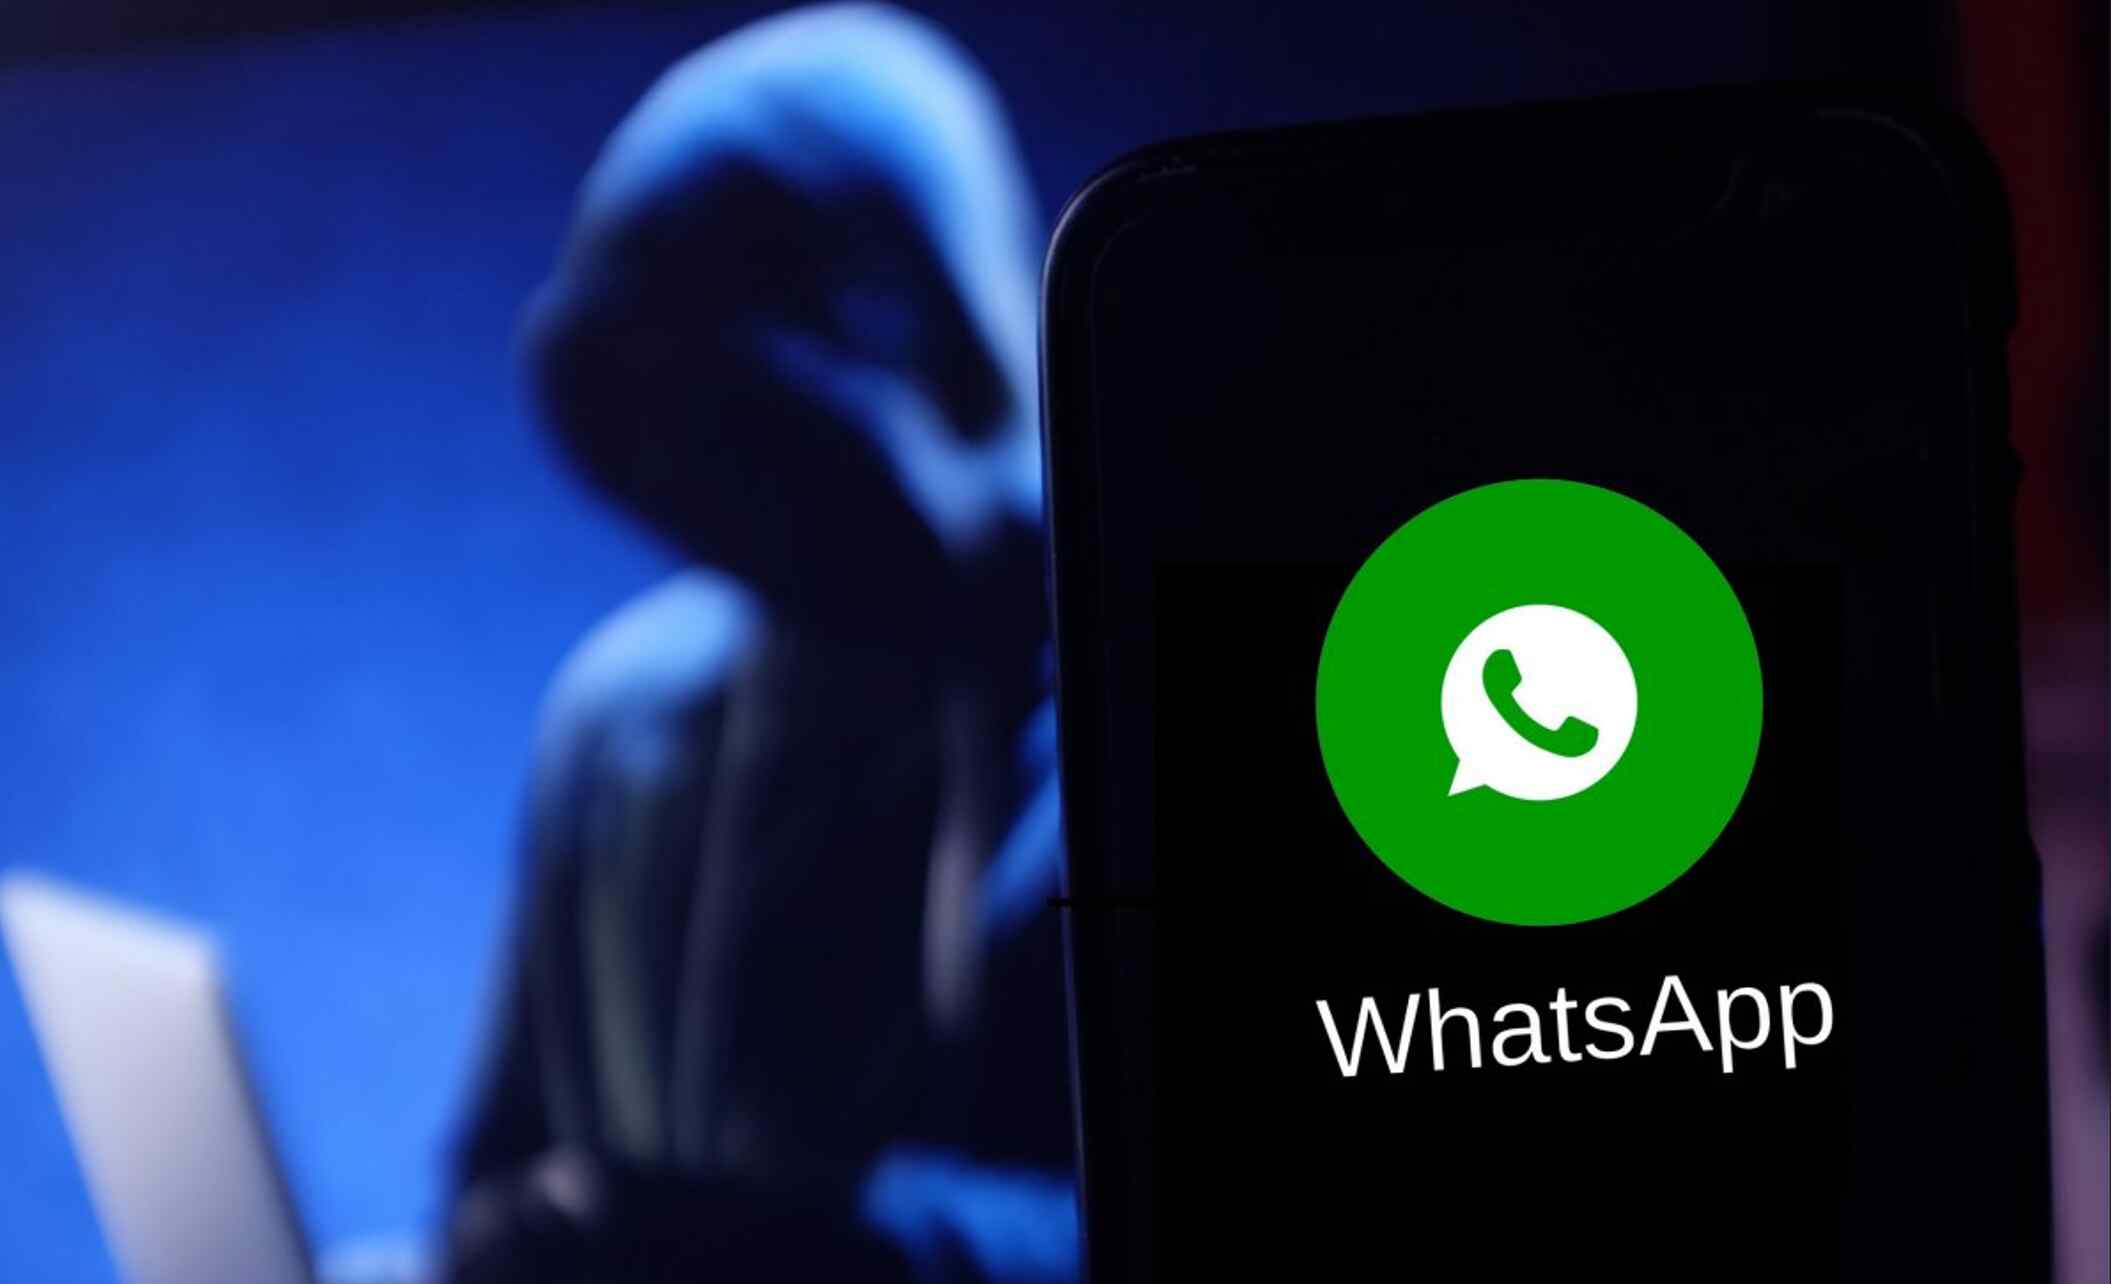 WhatsApp News: WhatsApp से रहें दूर, 200 करोड़ यूजर्स की हो रही है जासूसी! जानिए क्या है मामला?